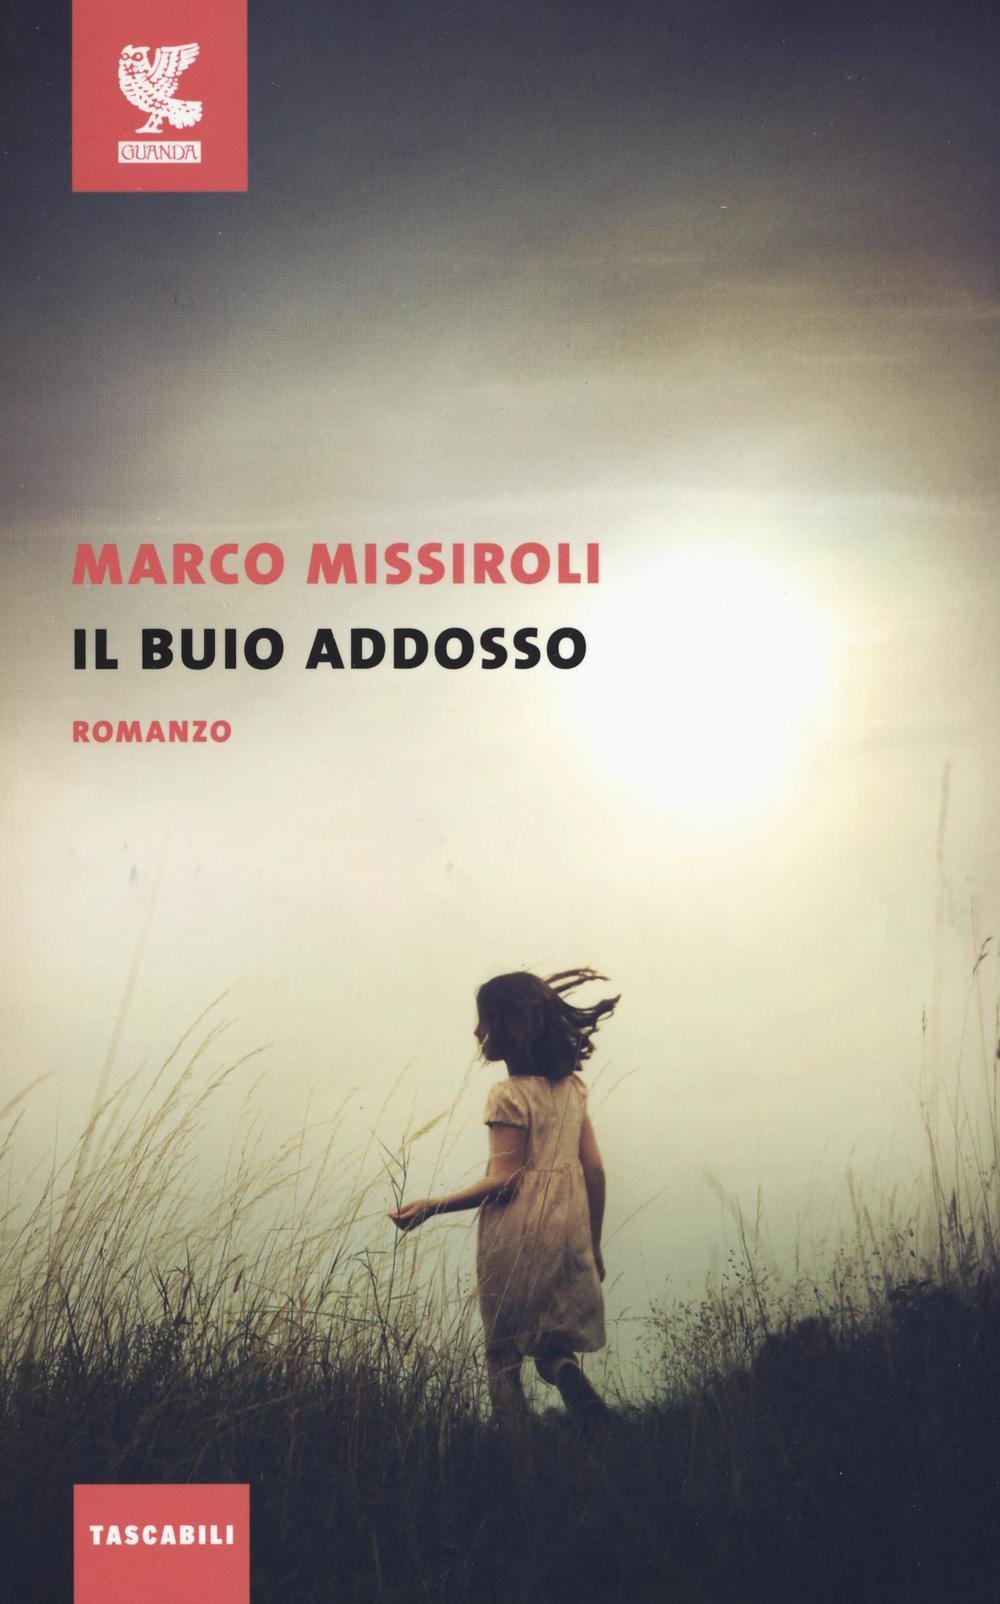 Marco Missiroli – Il Buio Addosso